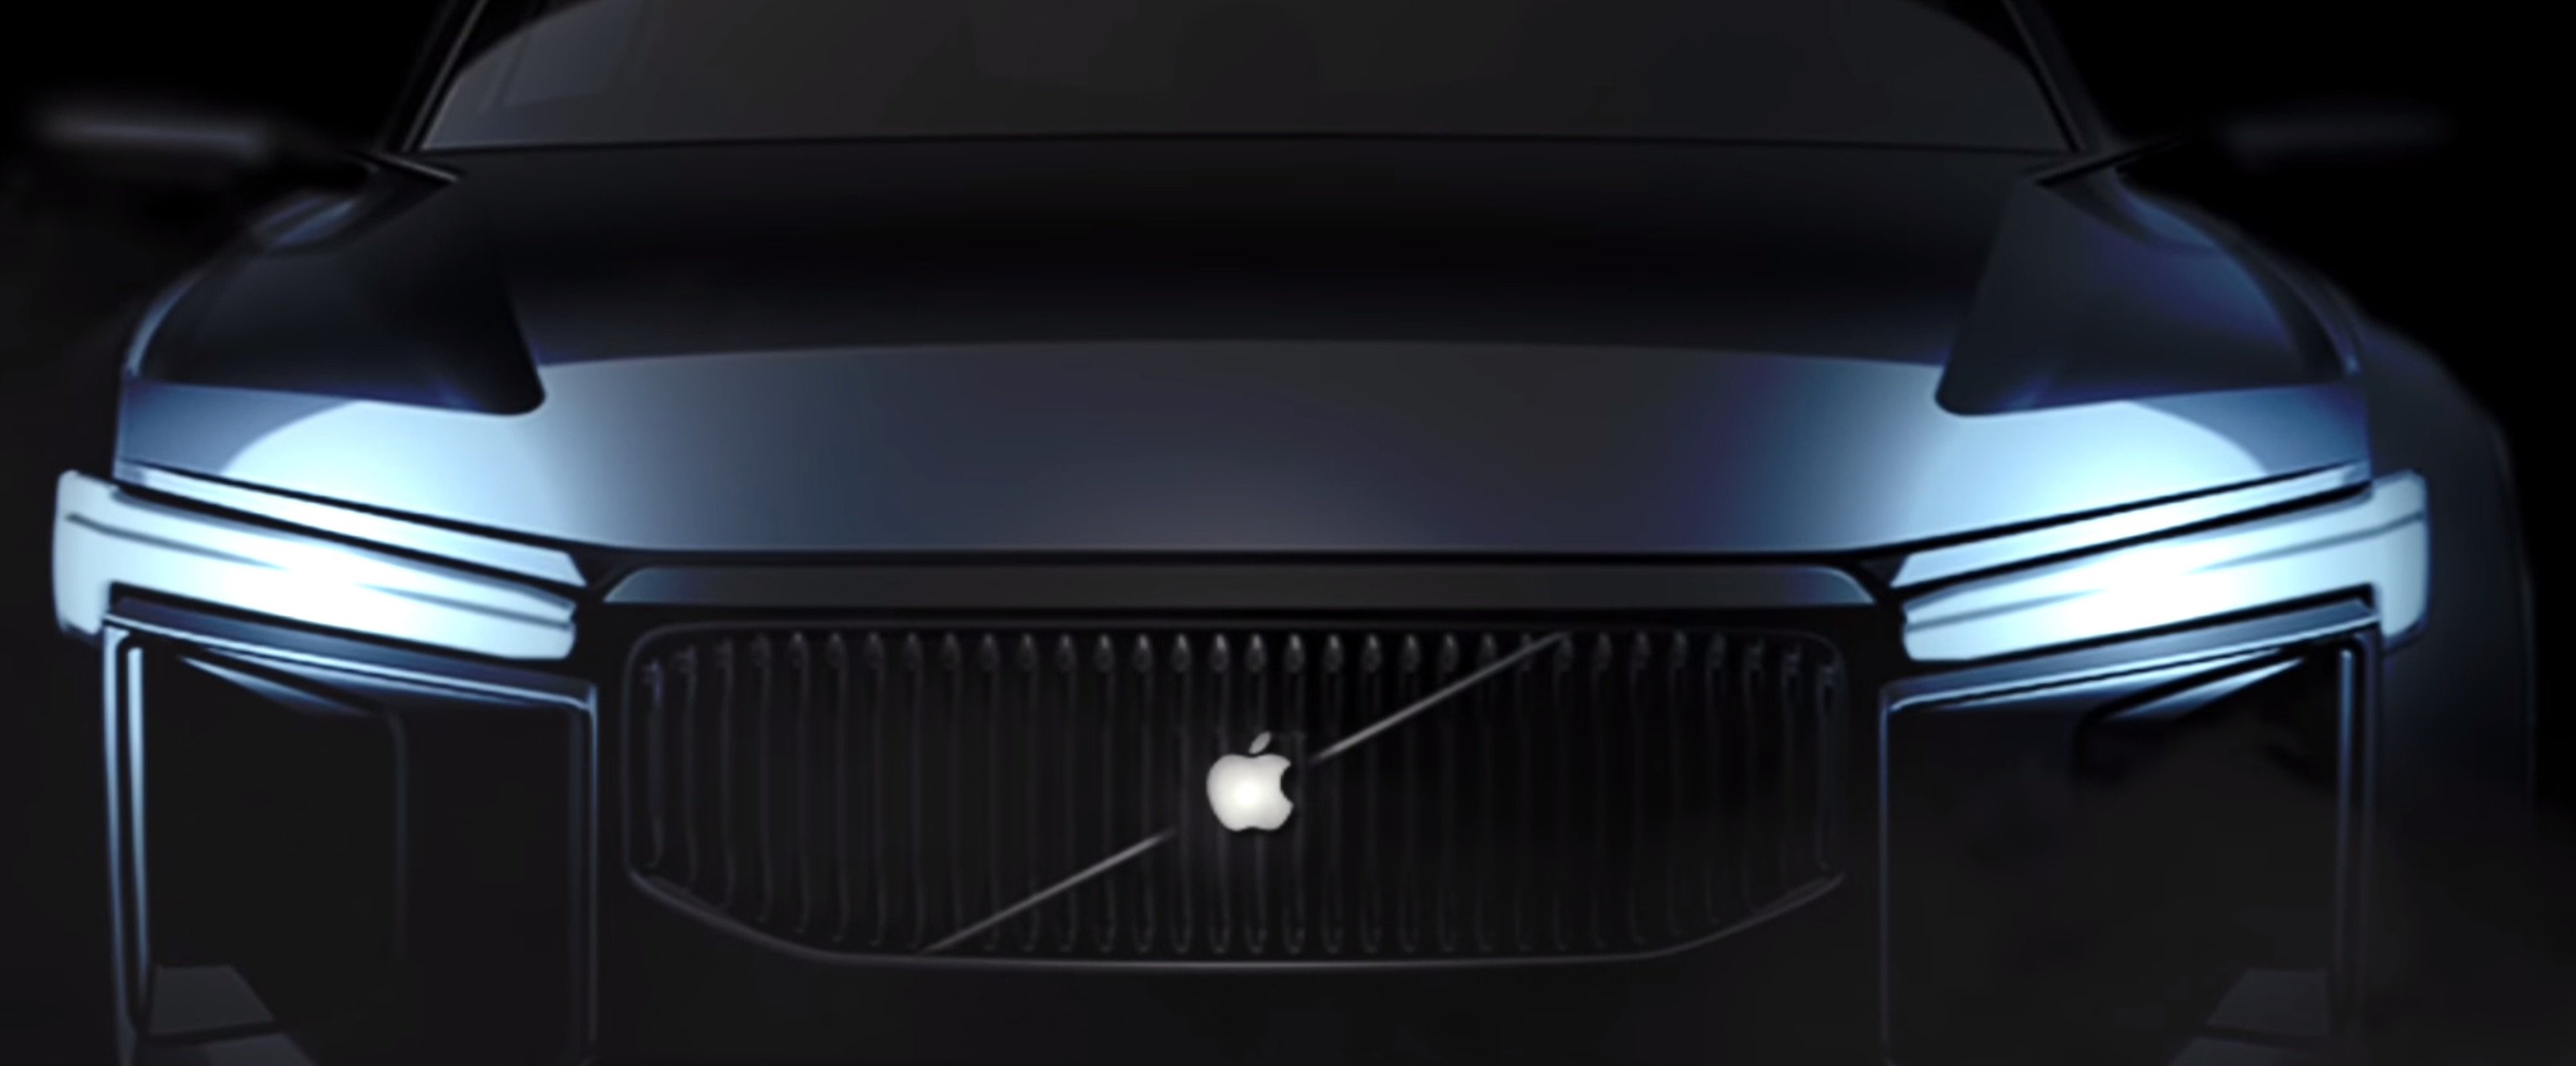 Apple Car - Mehr als nur ein Auto 2020 Concept-Video 4